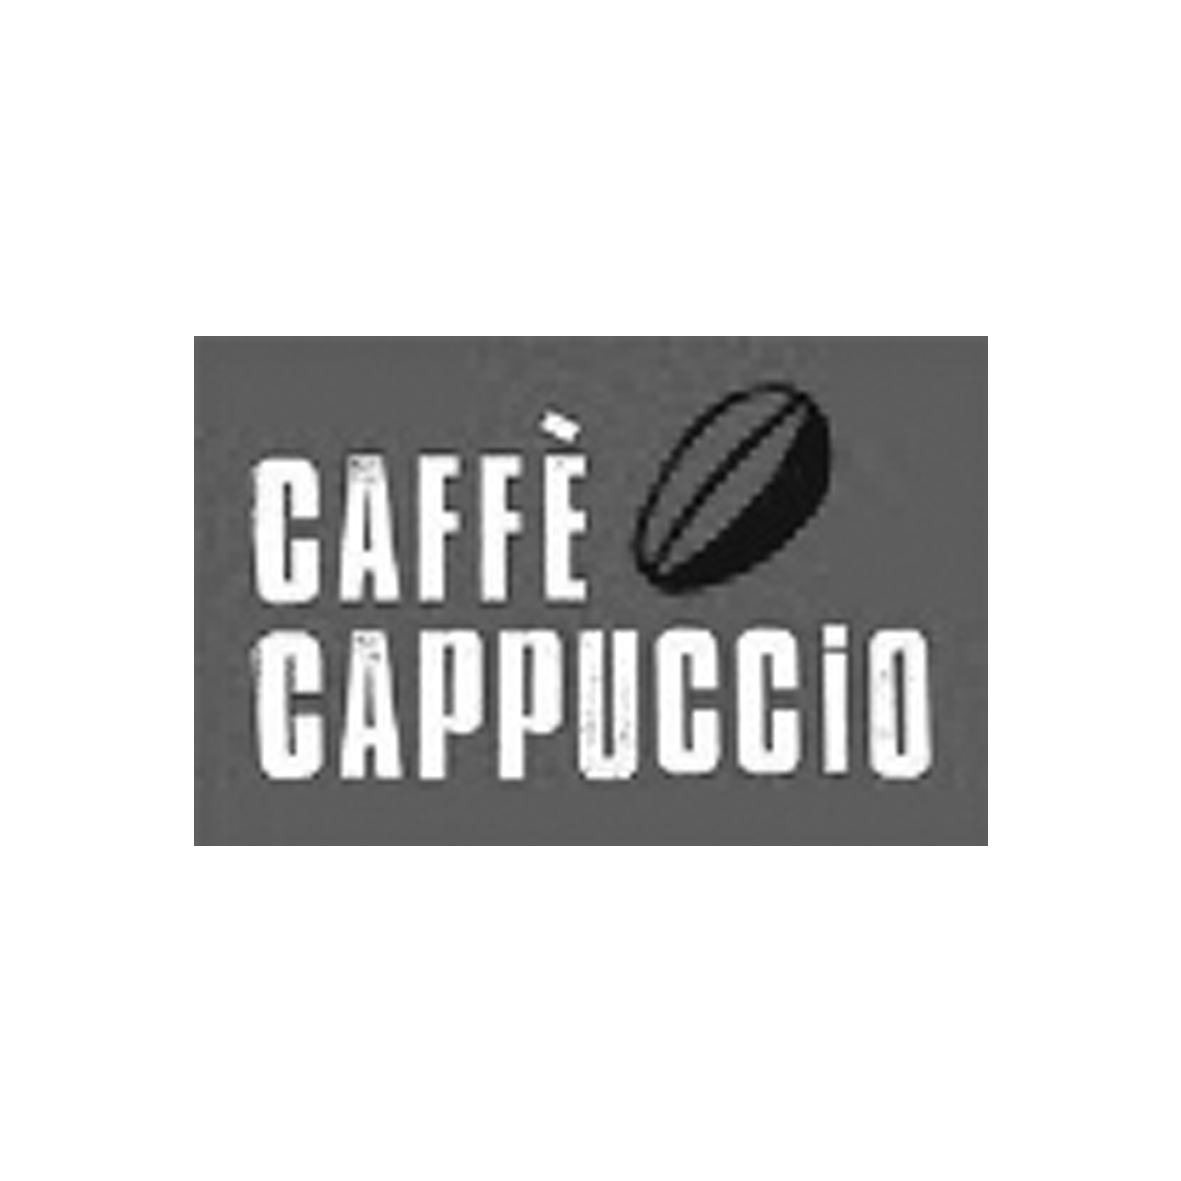 Caffè Cappuccio